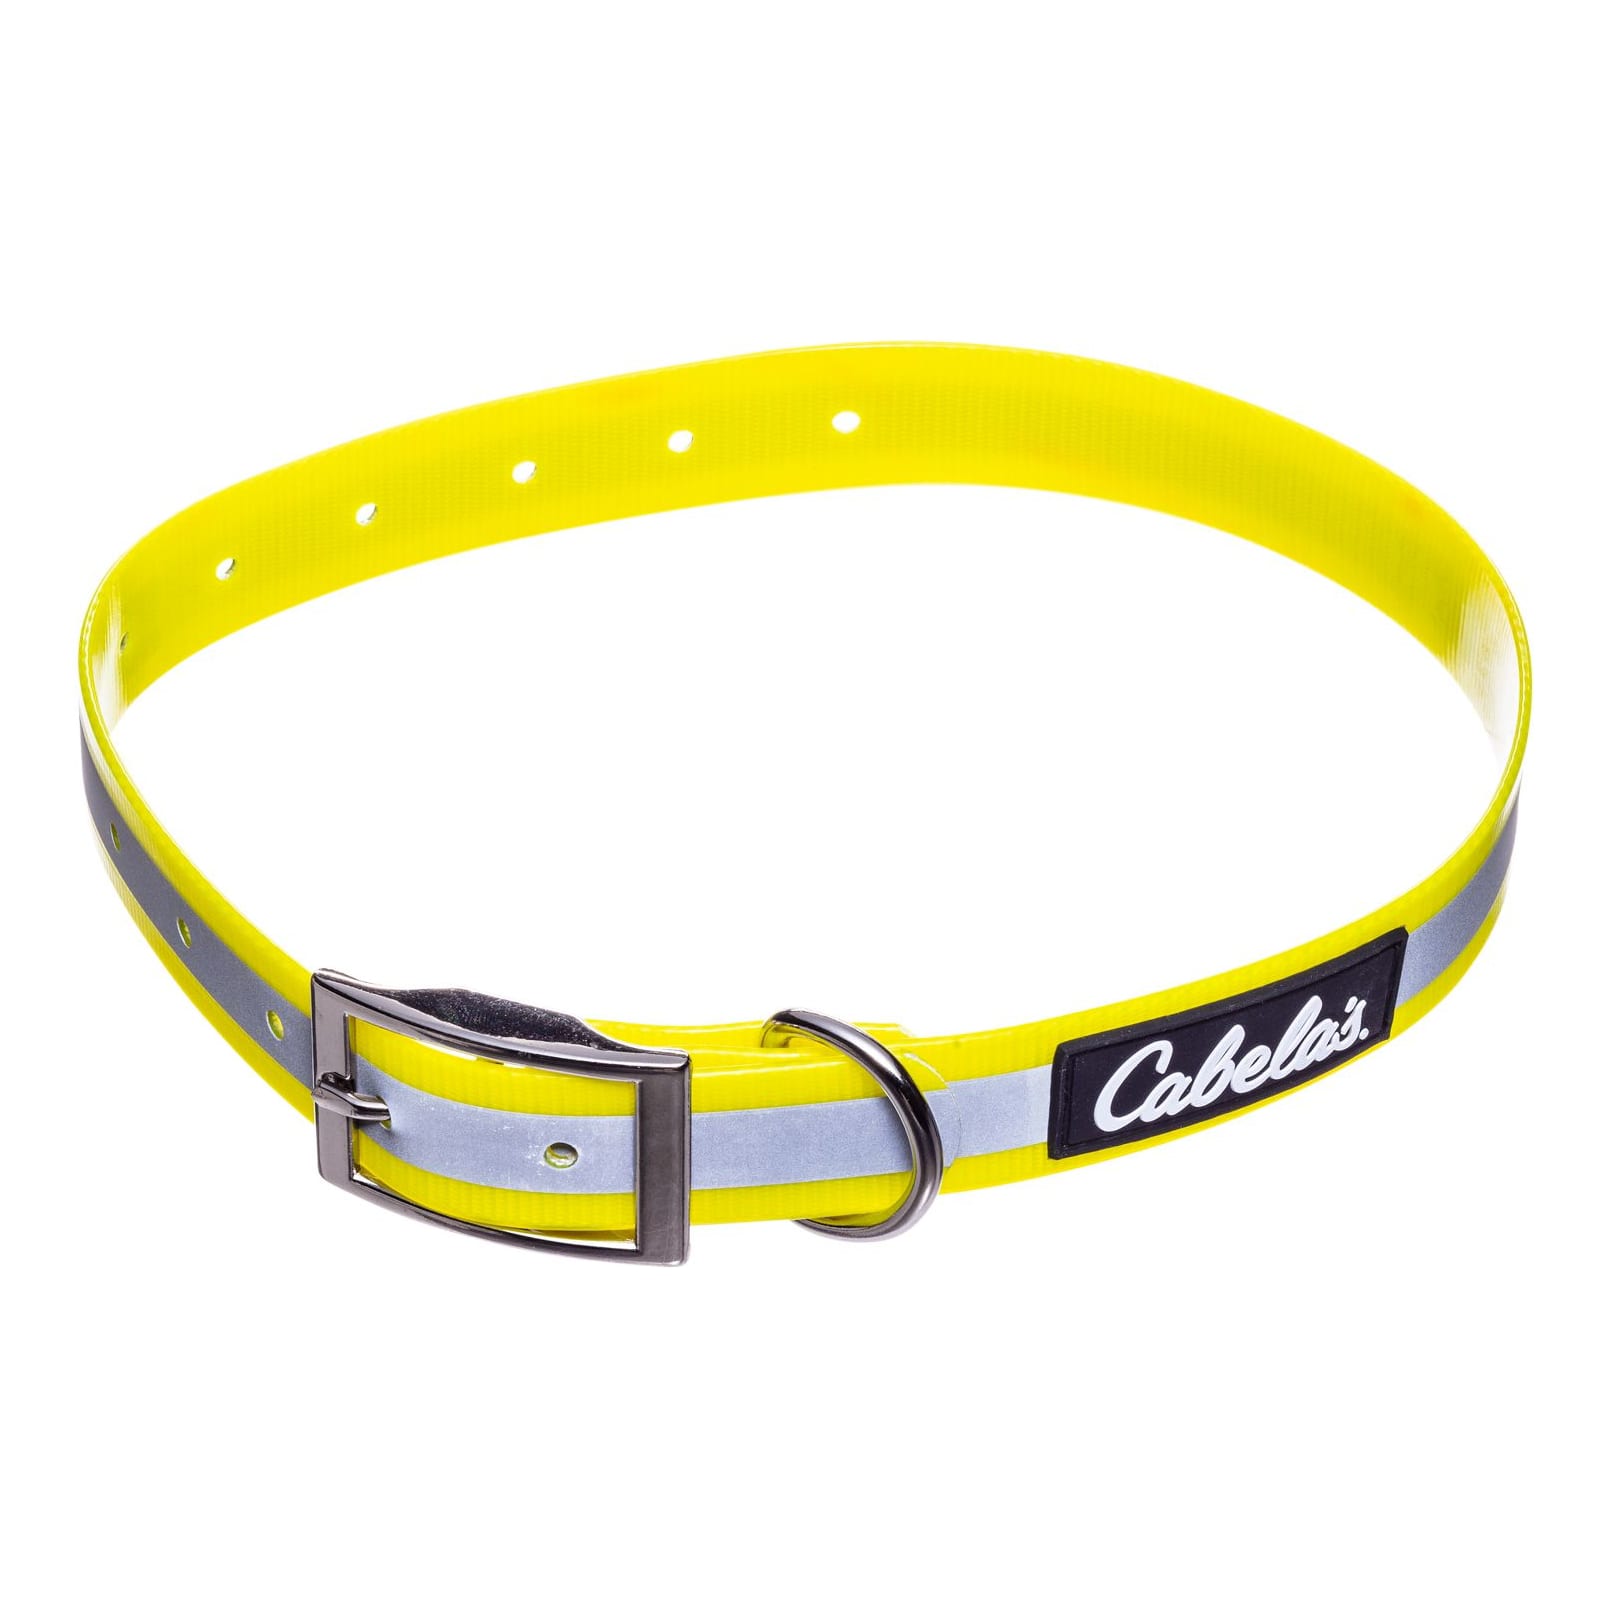 Cabela's® Reflective Dog Collar